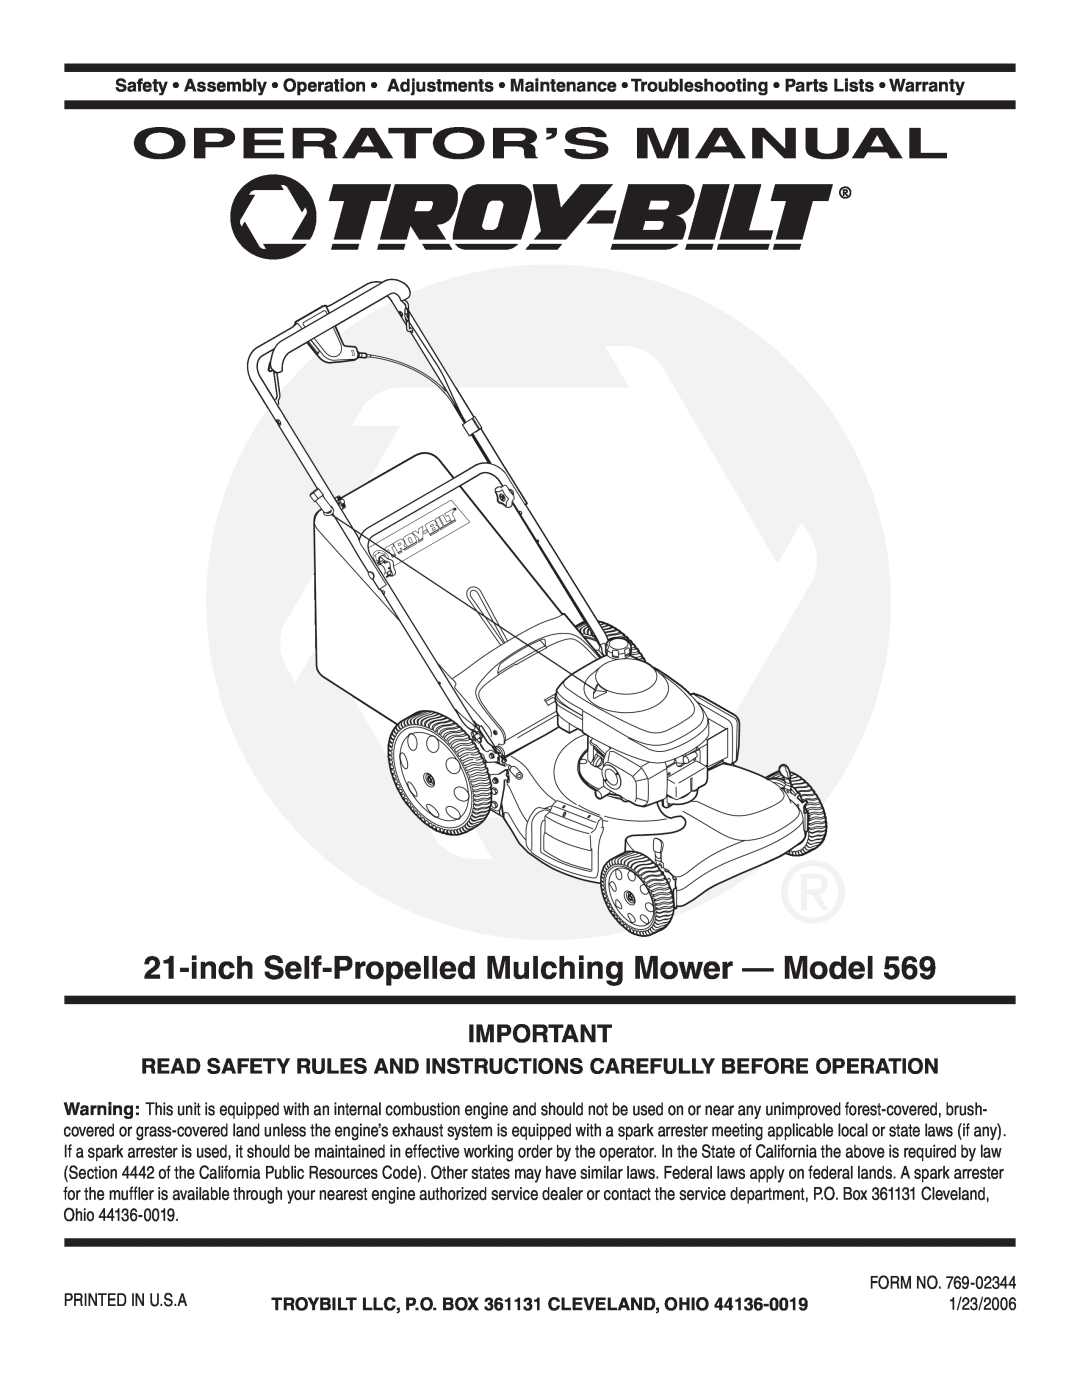 Troy-Bilt 569 warranty Operator’S Manual, inch Self-PropelledMulching Mower - Model 